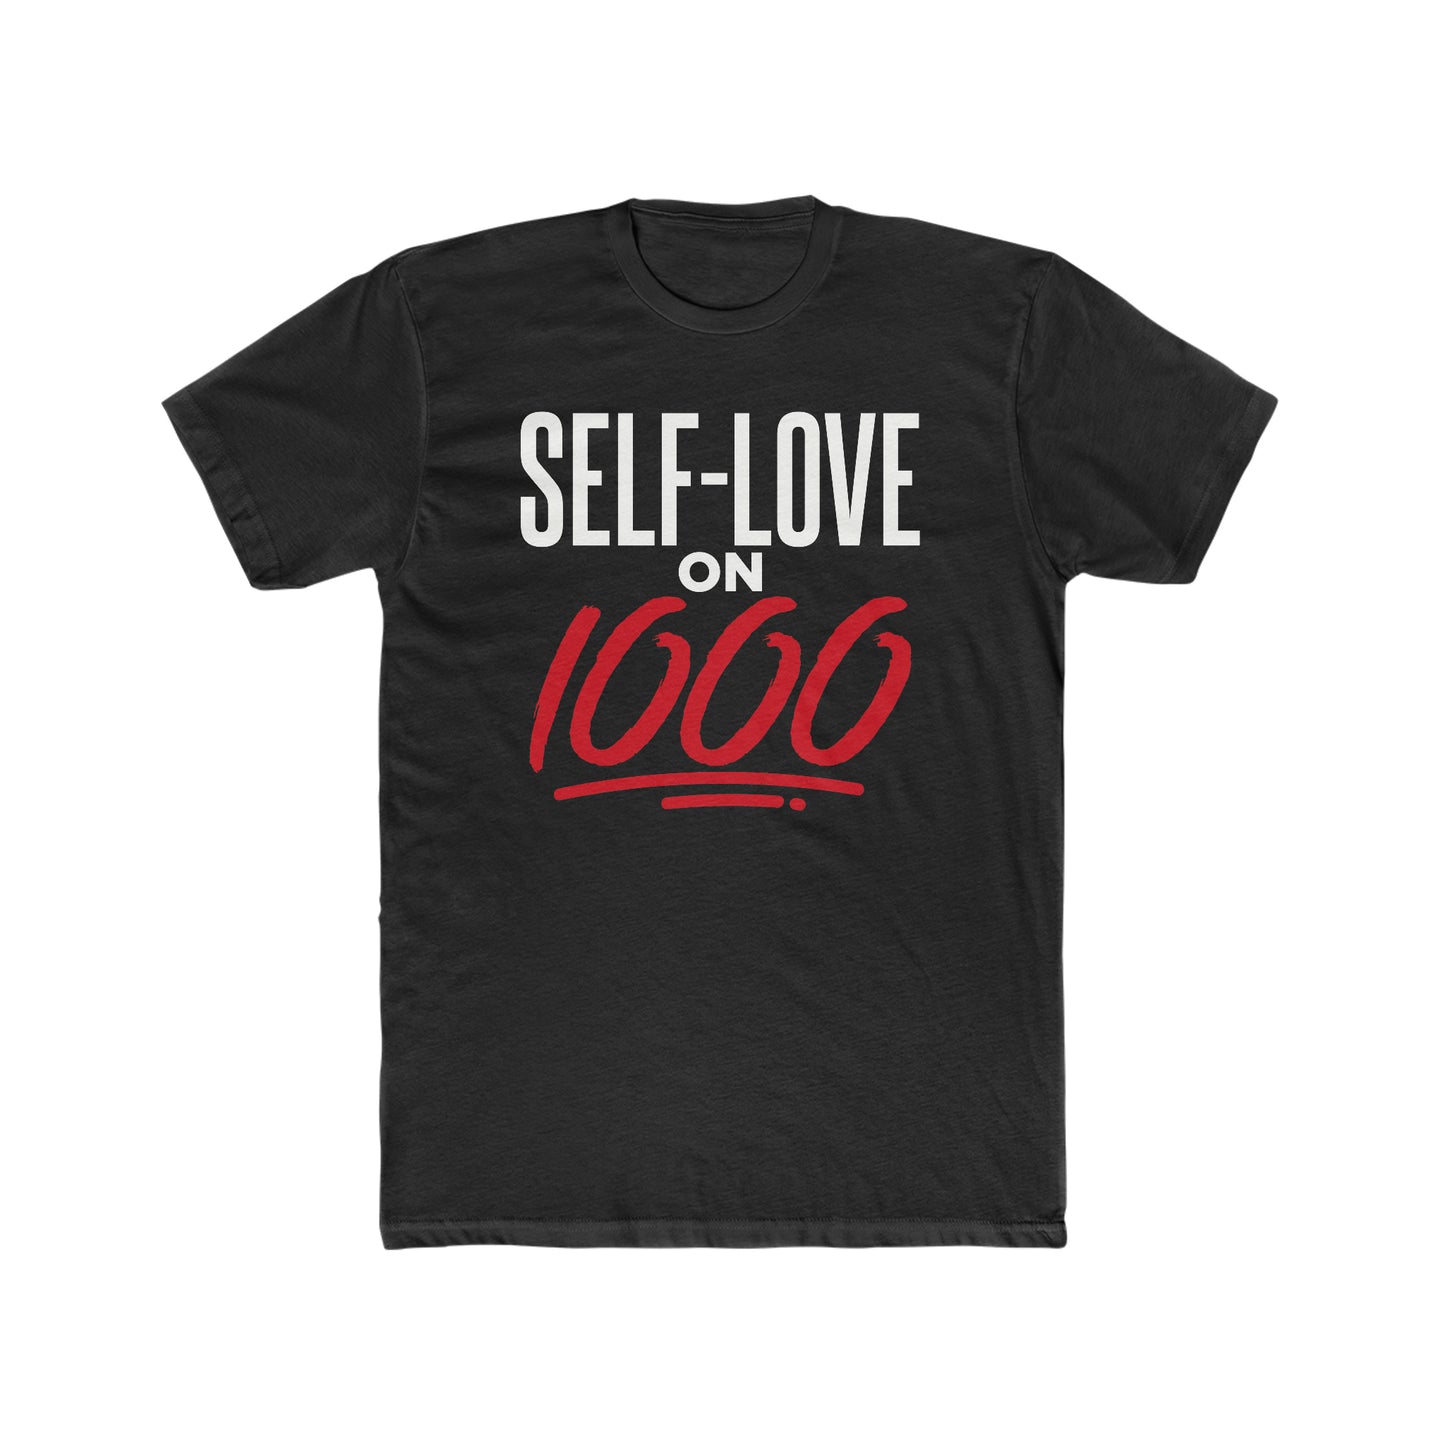 "Self-Love on 1000" tee